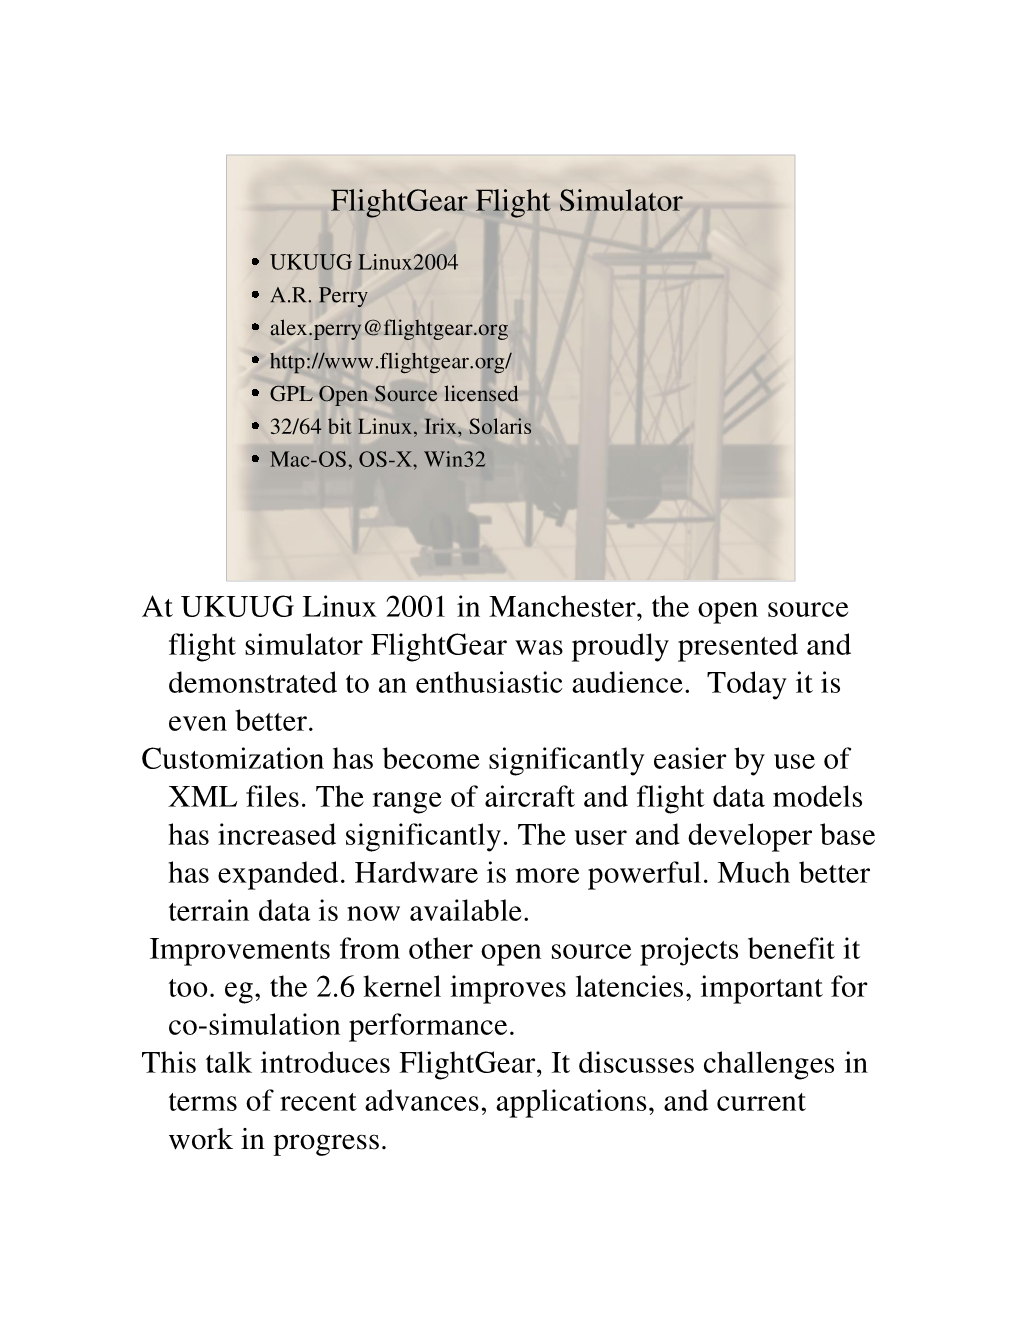 Flightgear Flight Simulator at UKUUG Linux 2001 in Manchester, the Open